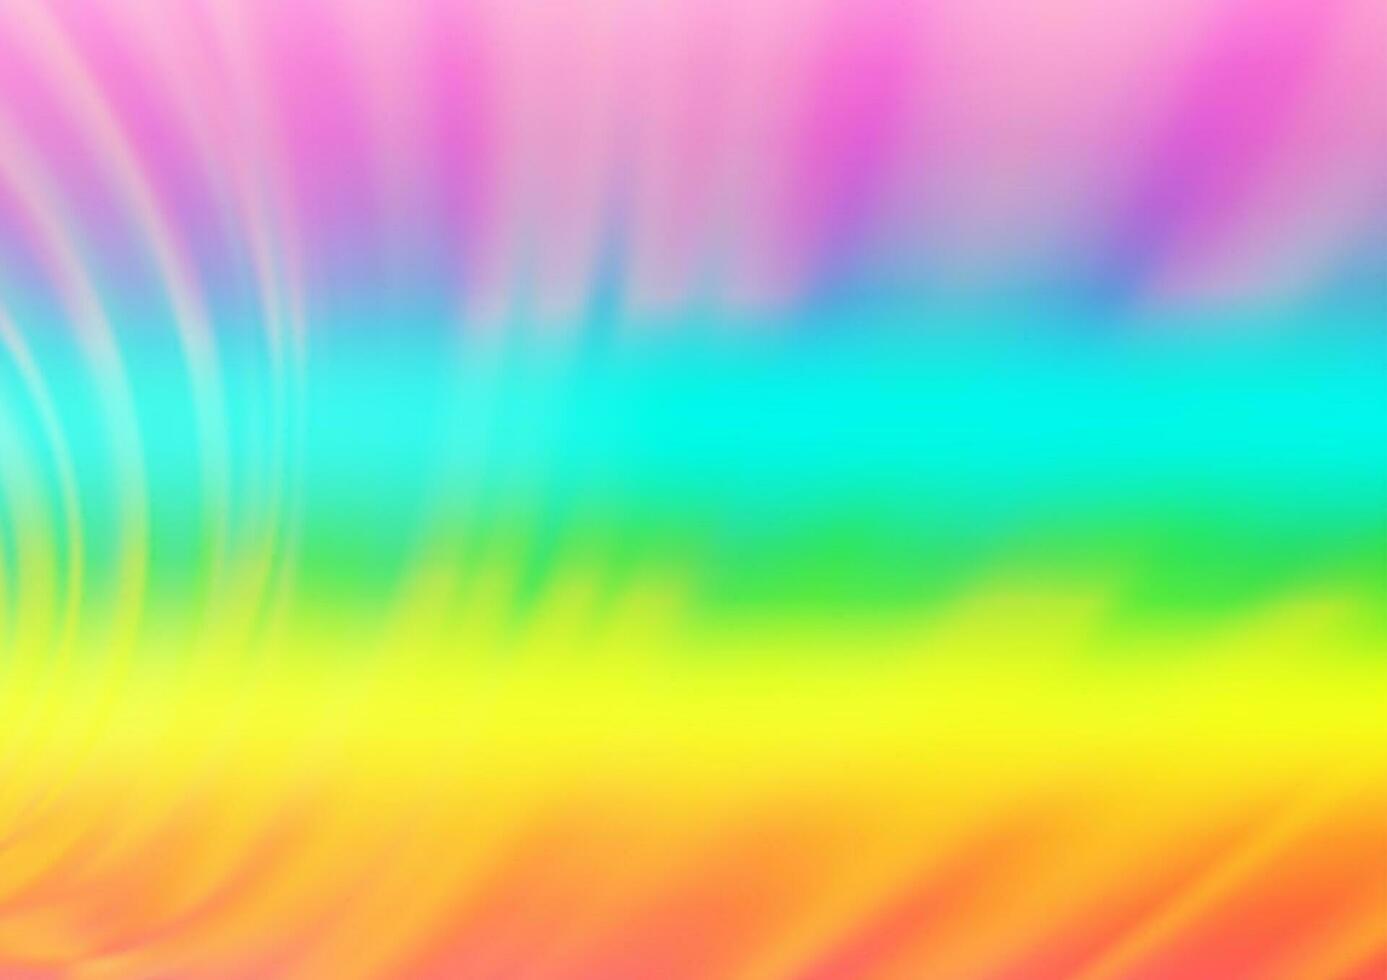 luz multicolor, vector de arco iris brillante fondo abstracto.